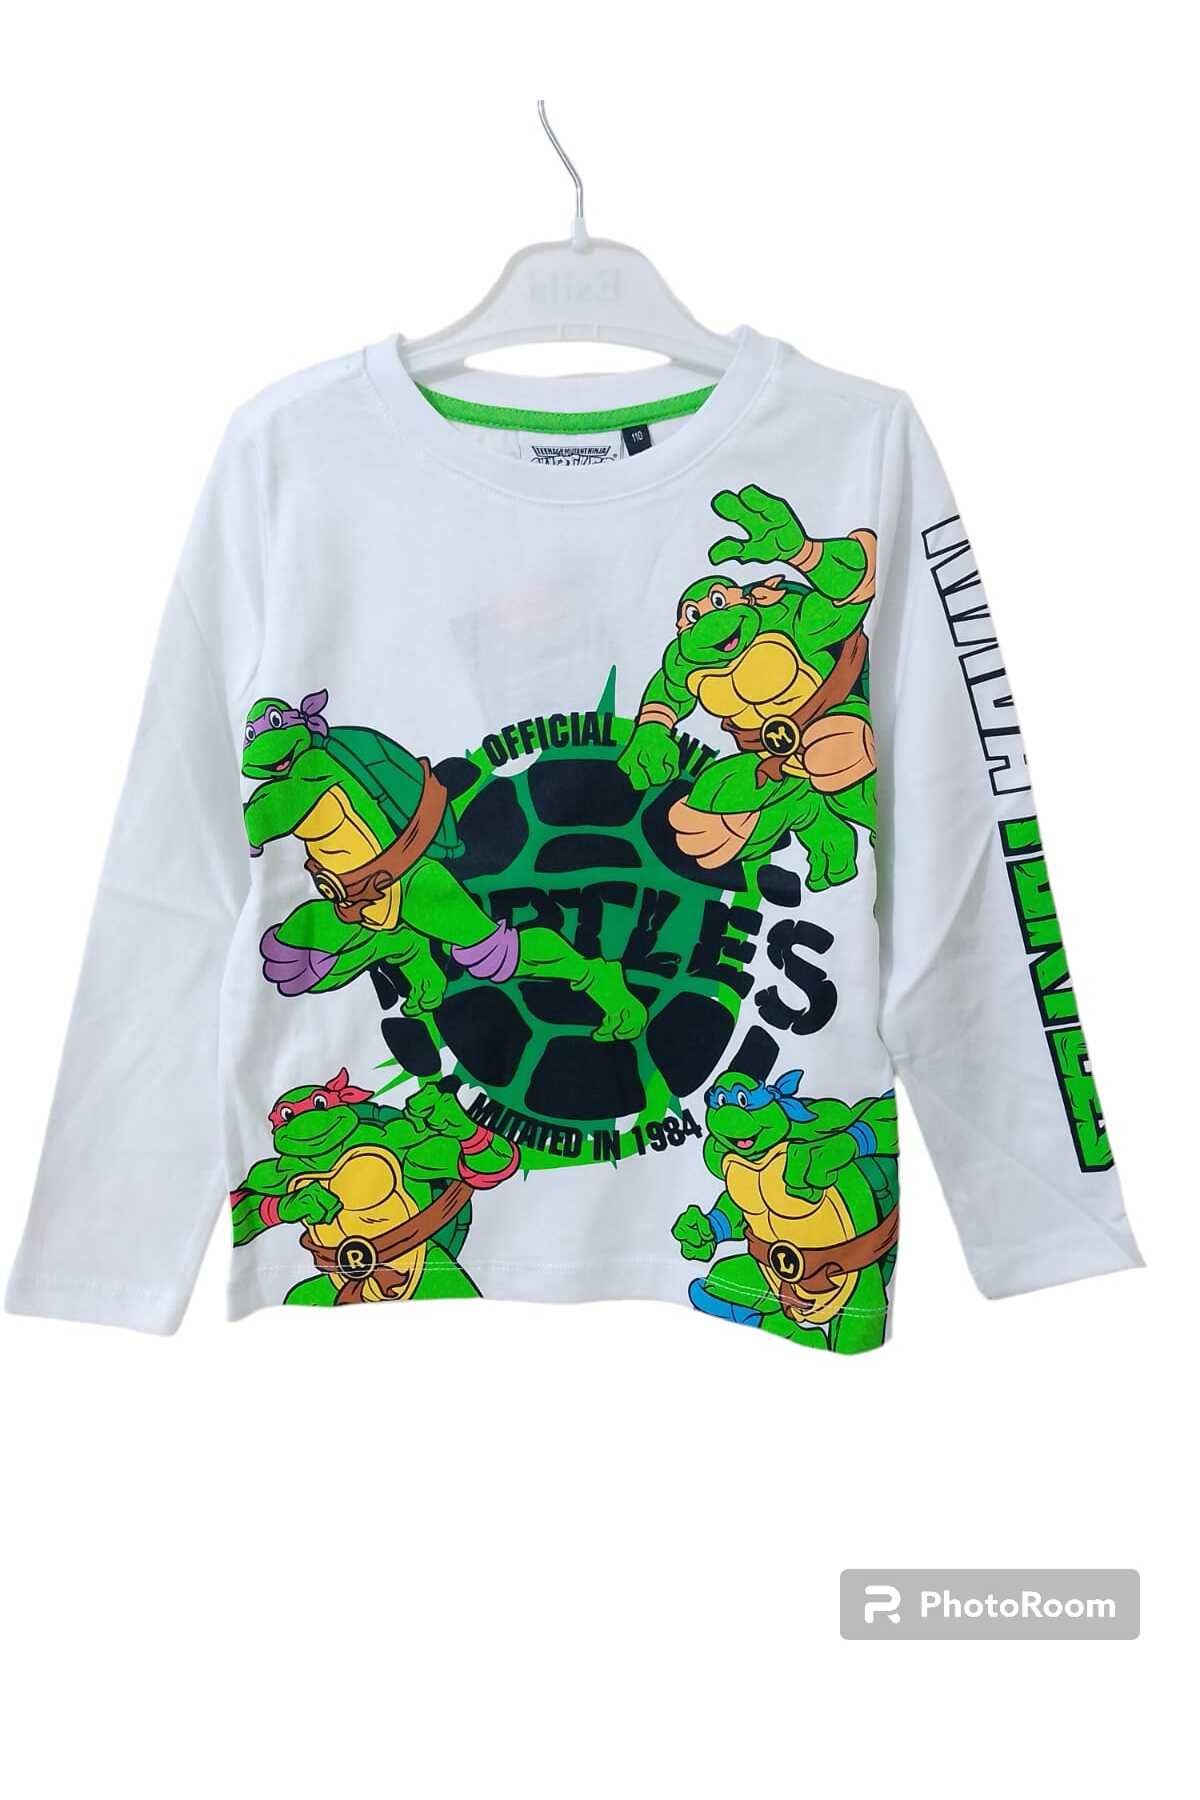 Cem erkek çocuk ninja kaplumbağa baskılı tişört